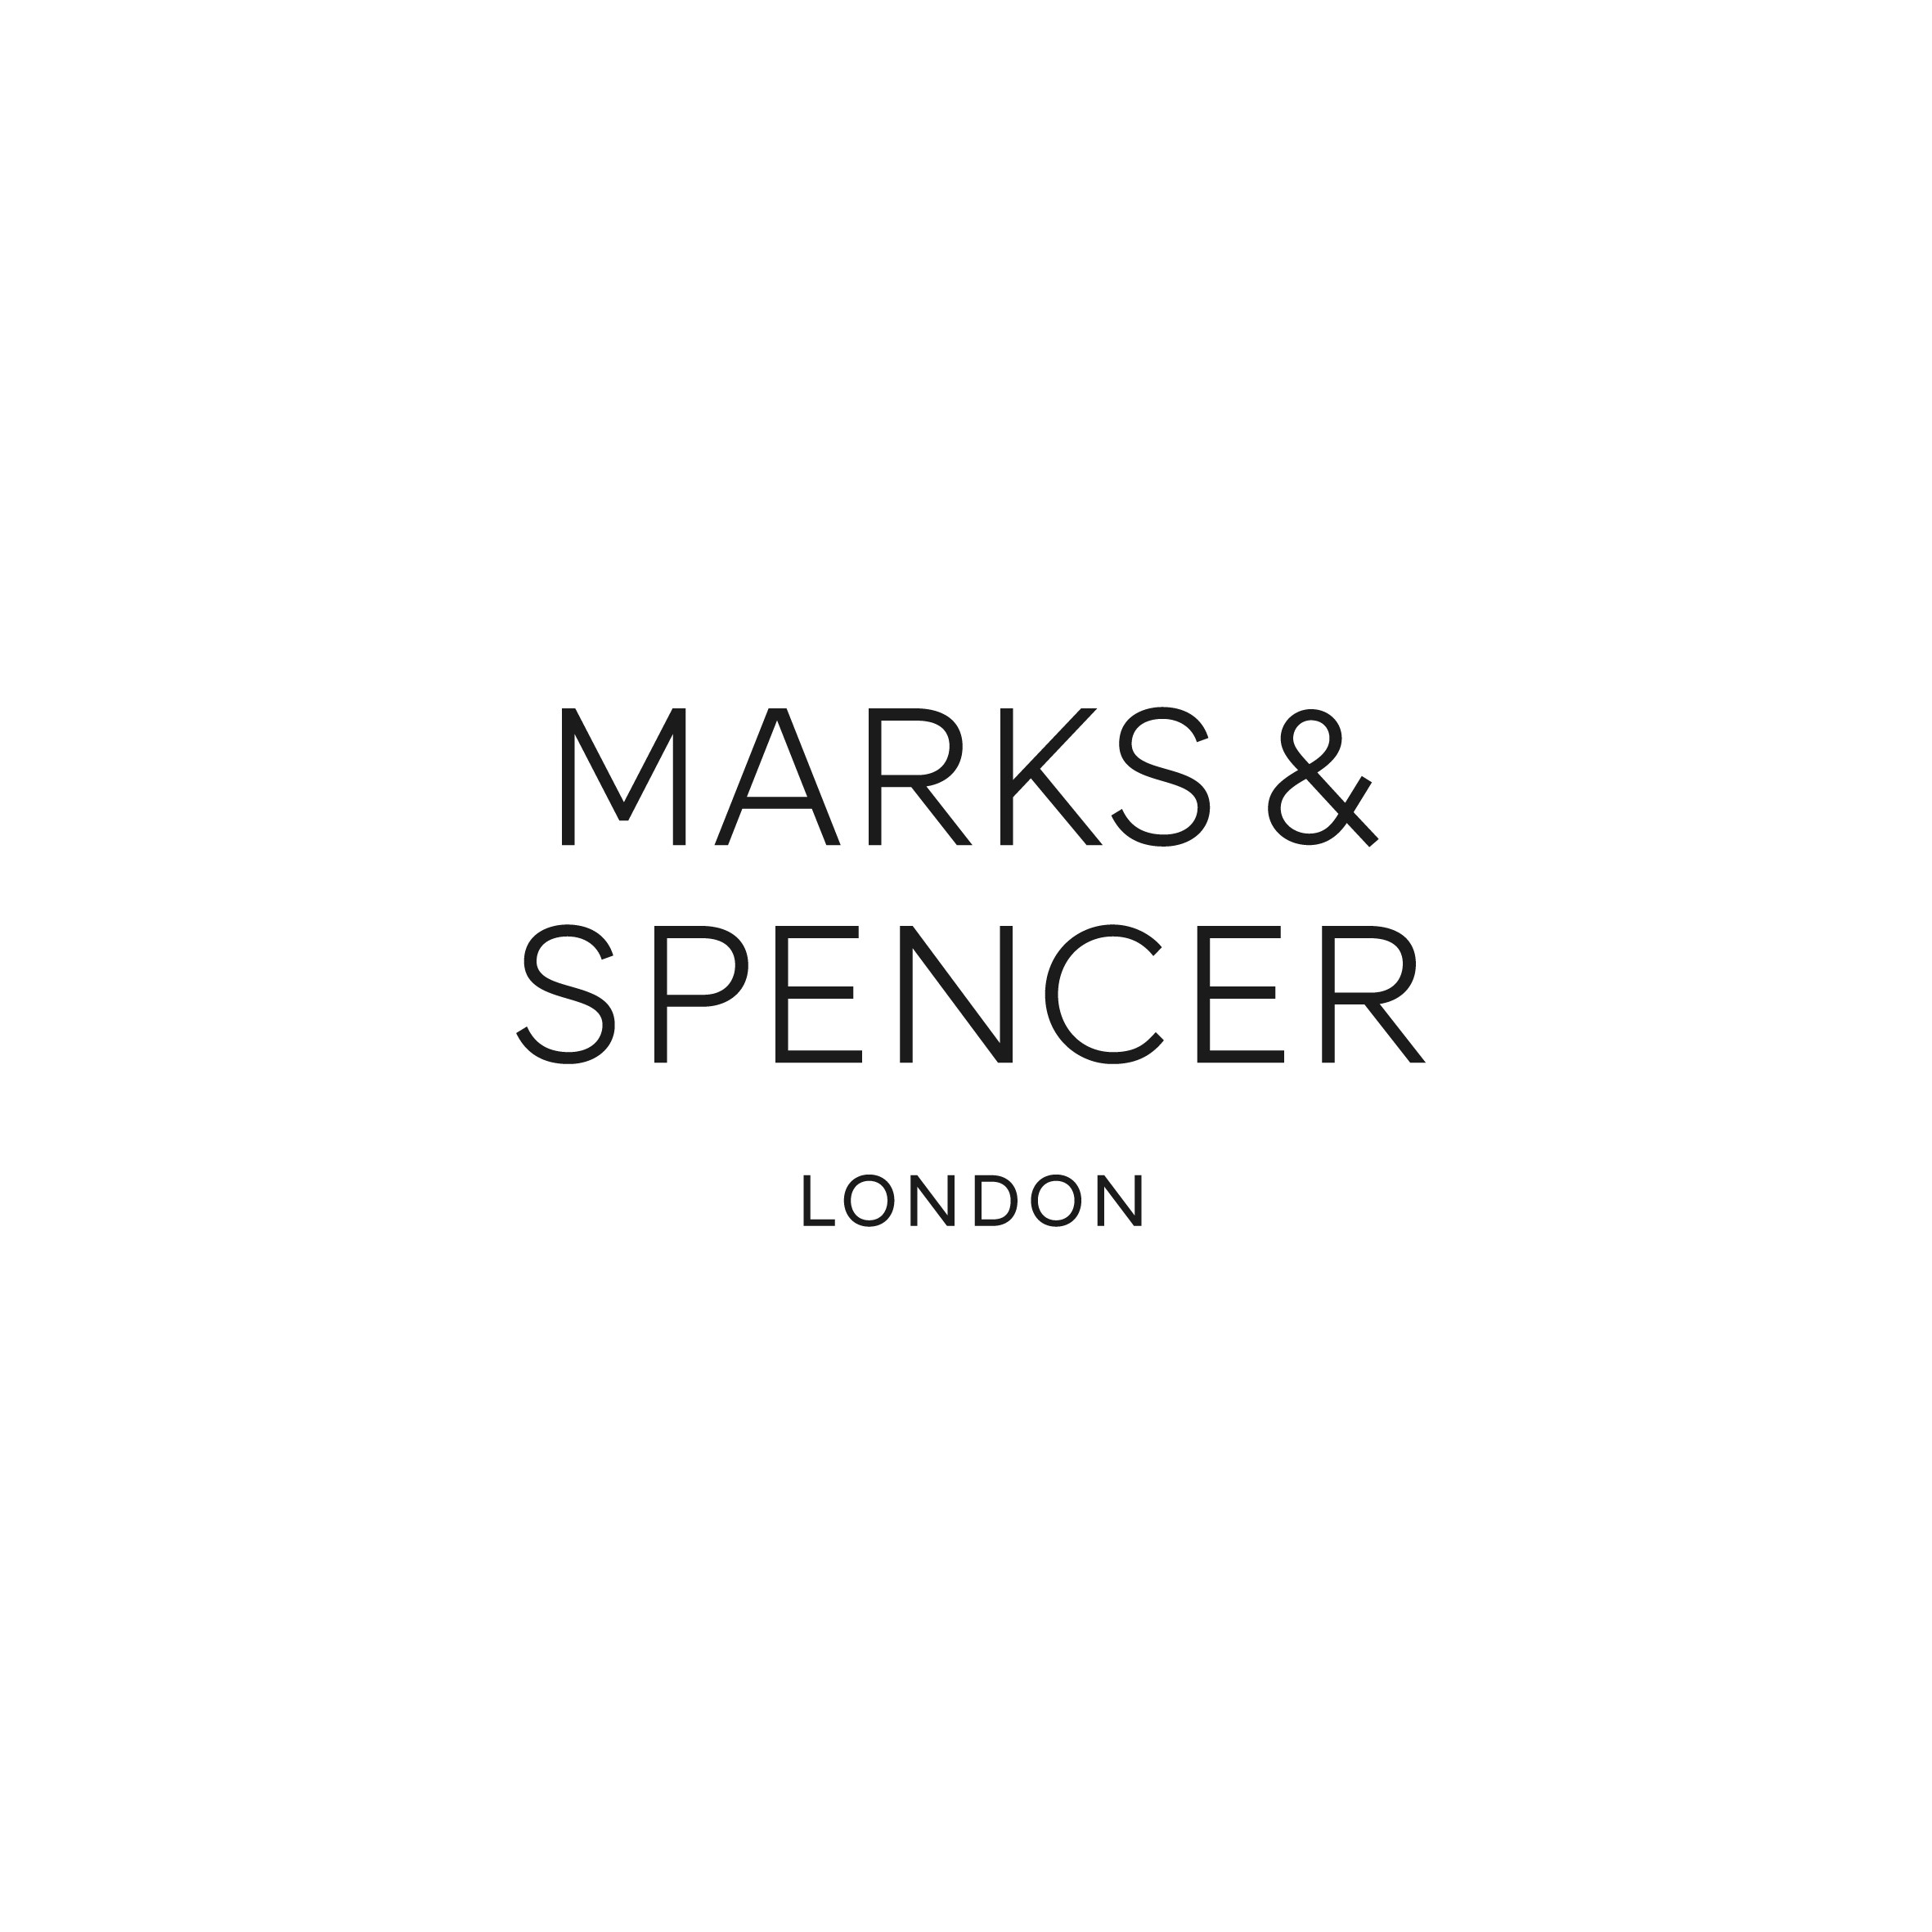 MARKS & SPENCER LONDON